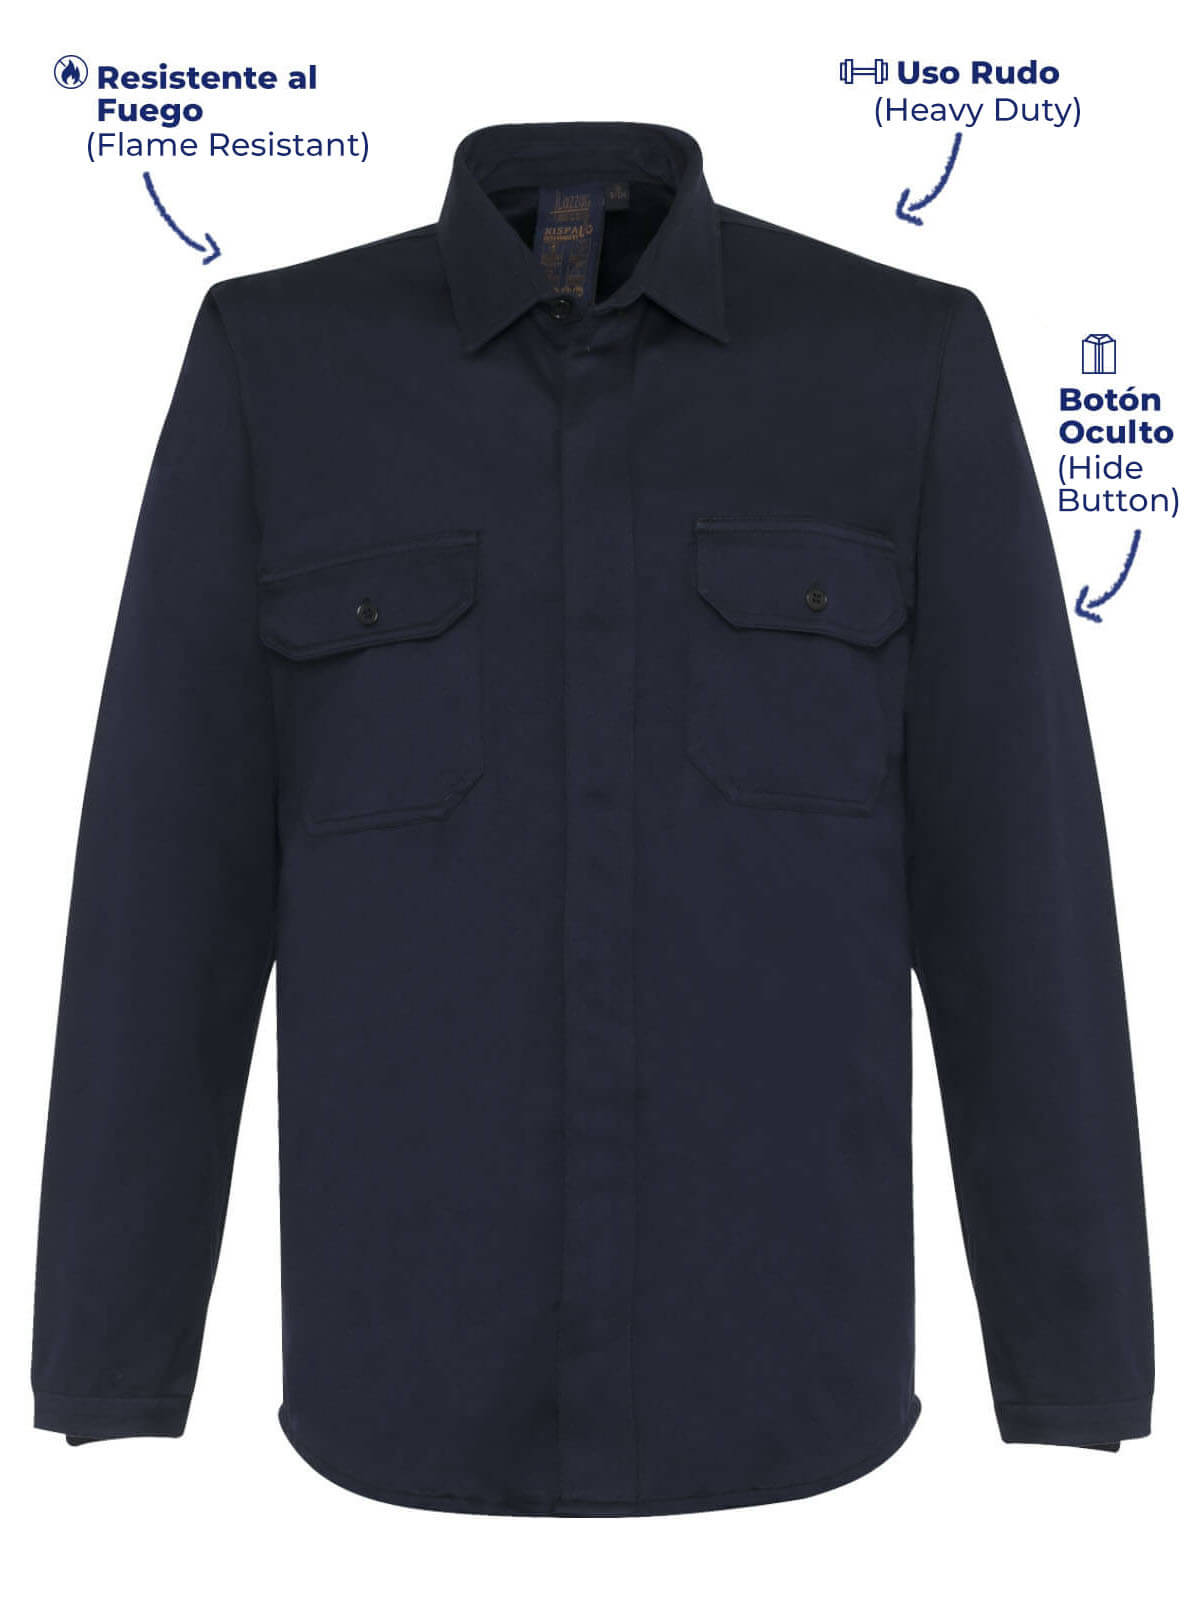 Flame retardant shirt navy blue color